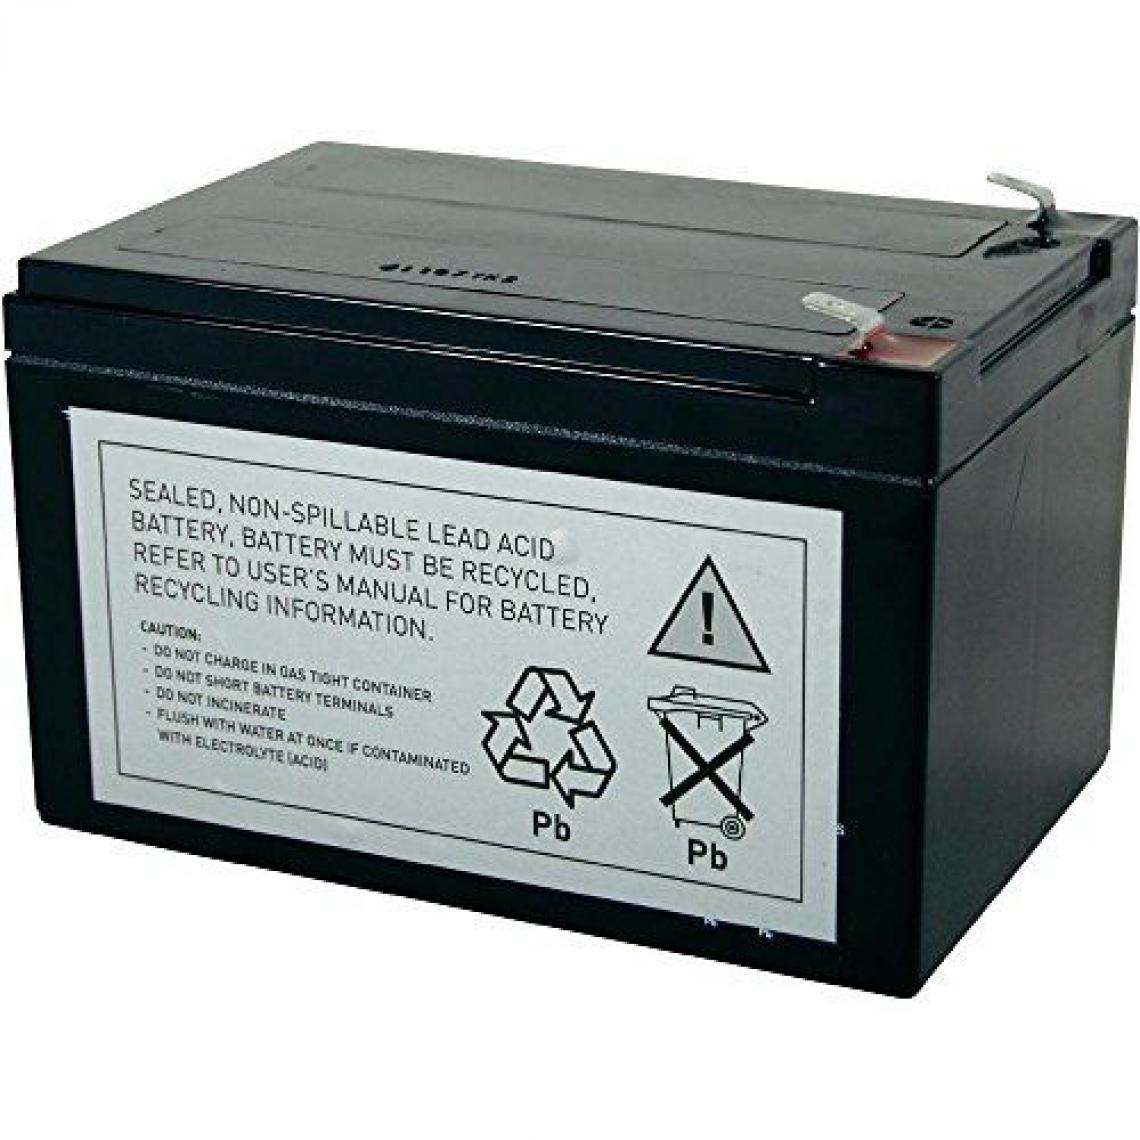 Inconnu - Batterie plomb de rechange pour onduleur Conrad energy RBC4 - Onduleur